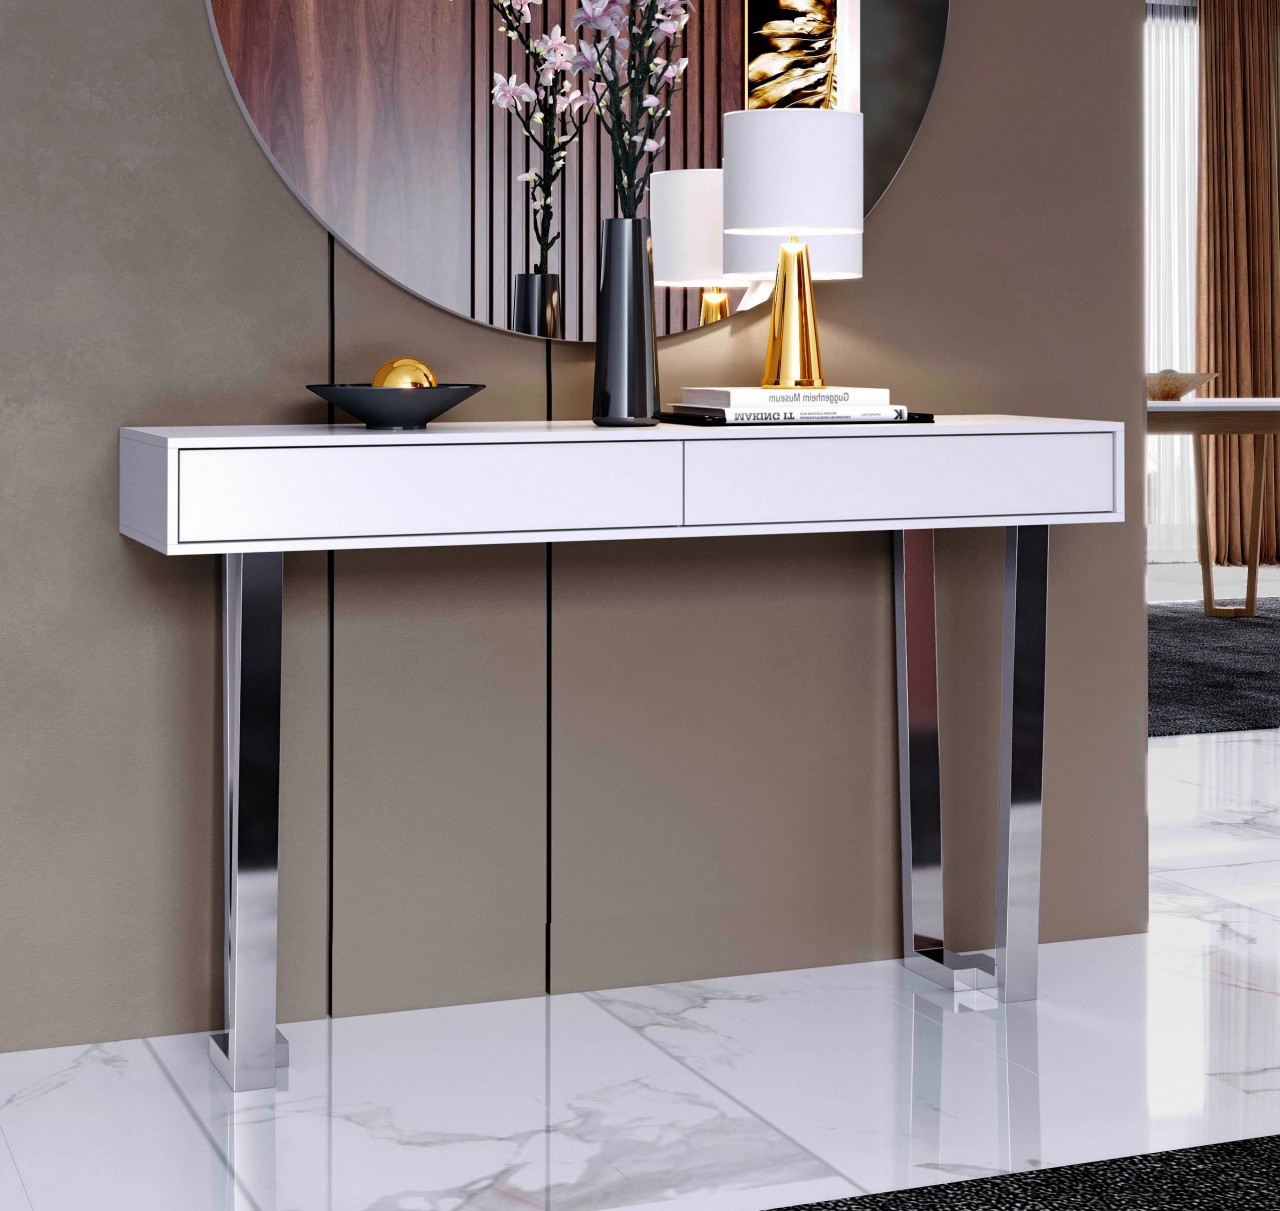 O espelho Luca Simple é a maneira ideal de adicionar um toque moderno e elegante a qualquer sala. Combinando funcionalidade e estilo, ele torna o seu espaço mais aconchegante.